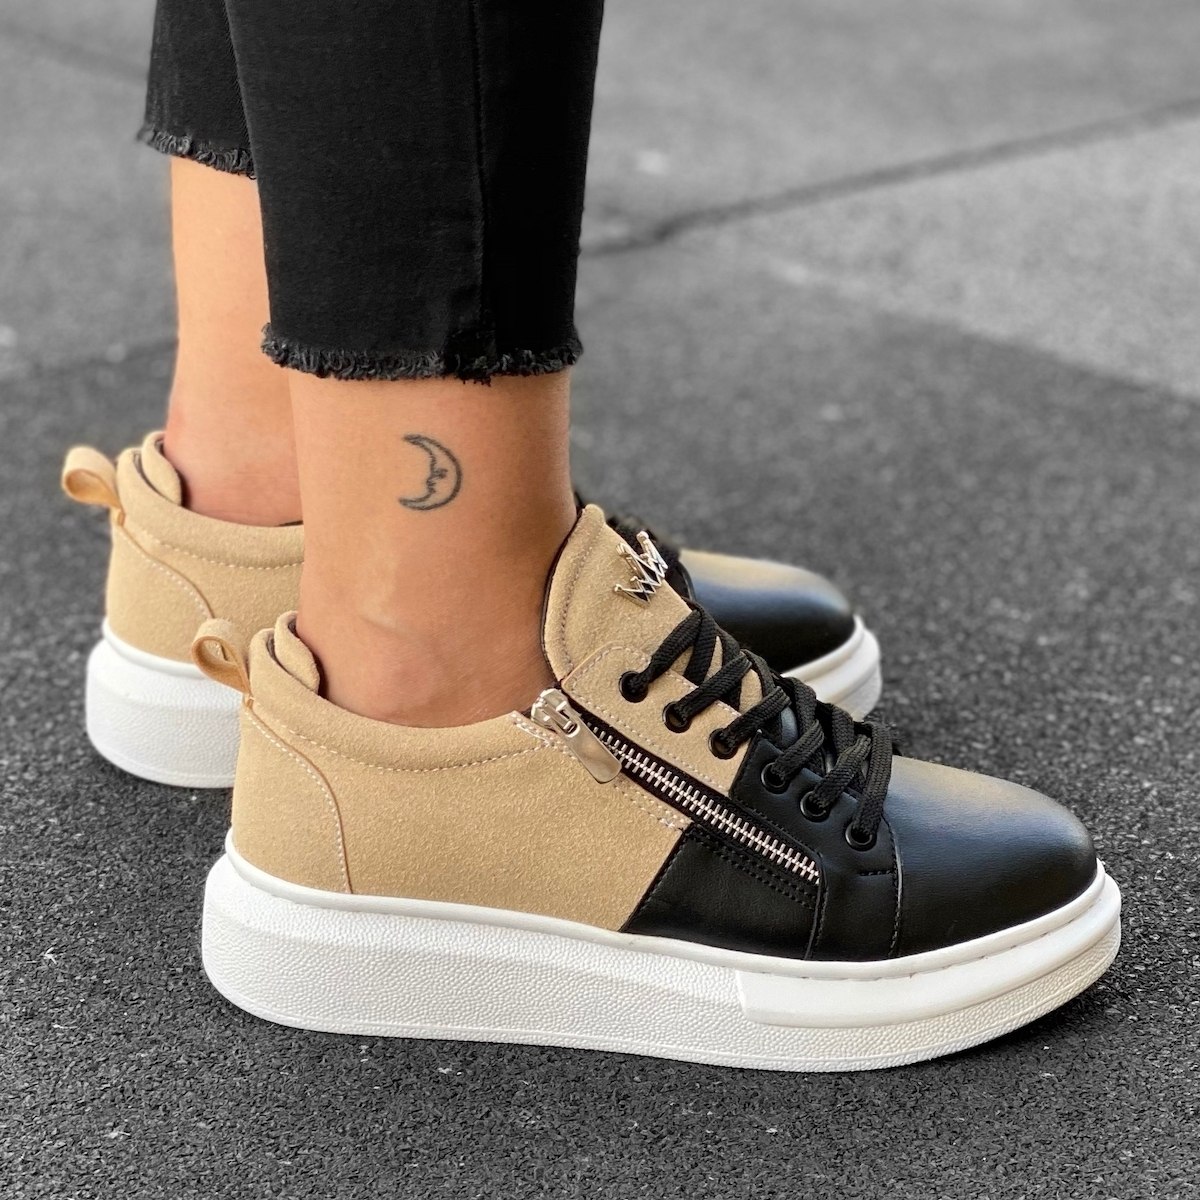 Women's Hype Sole Zipped Style Sneakers In Cream-Black - 2